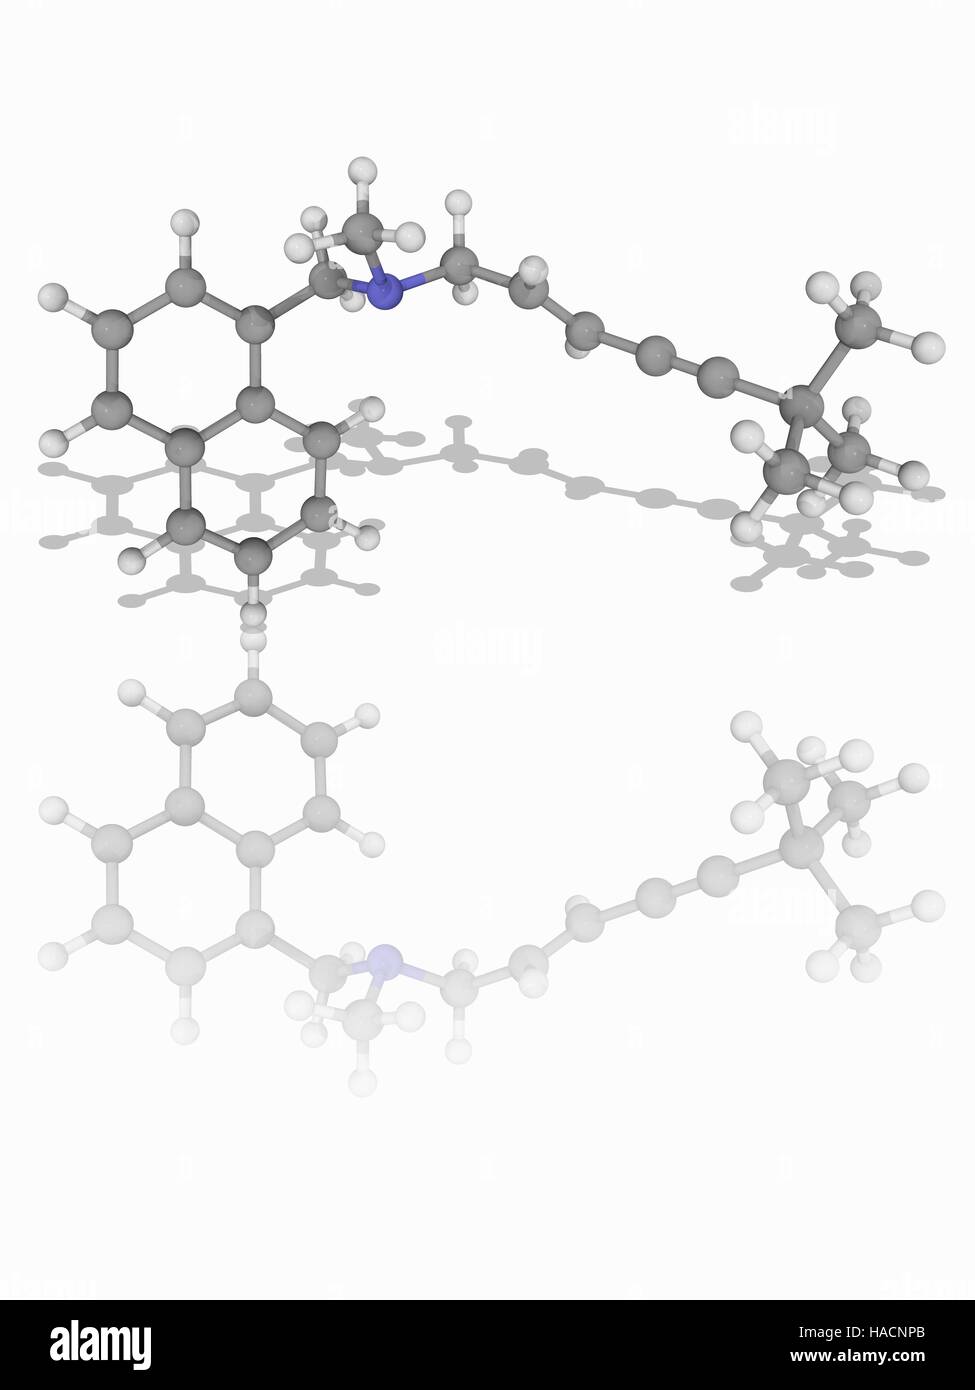 Terbinafin. Molekulares Modell des Wirkstoff Terbinafin (C21. H25. (N), ein synthetisches Allylamine und Anti-Pilz chemische verwendet zur Behandlung von Infektionen durch Dermatophyten Gruppe von Pilzen. Atome als Kugeln dargestellt werden und sind farblich gekennzeichnet: Kohlenstoff (grau), Wasserstoff (weiß) und Stickstoff (blau). Abbildung. Stockfoto